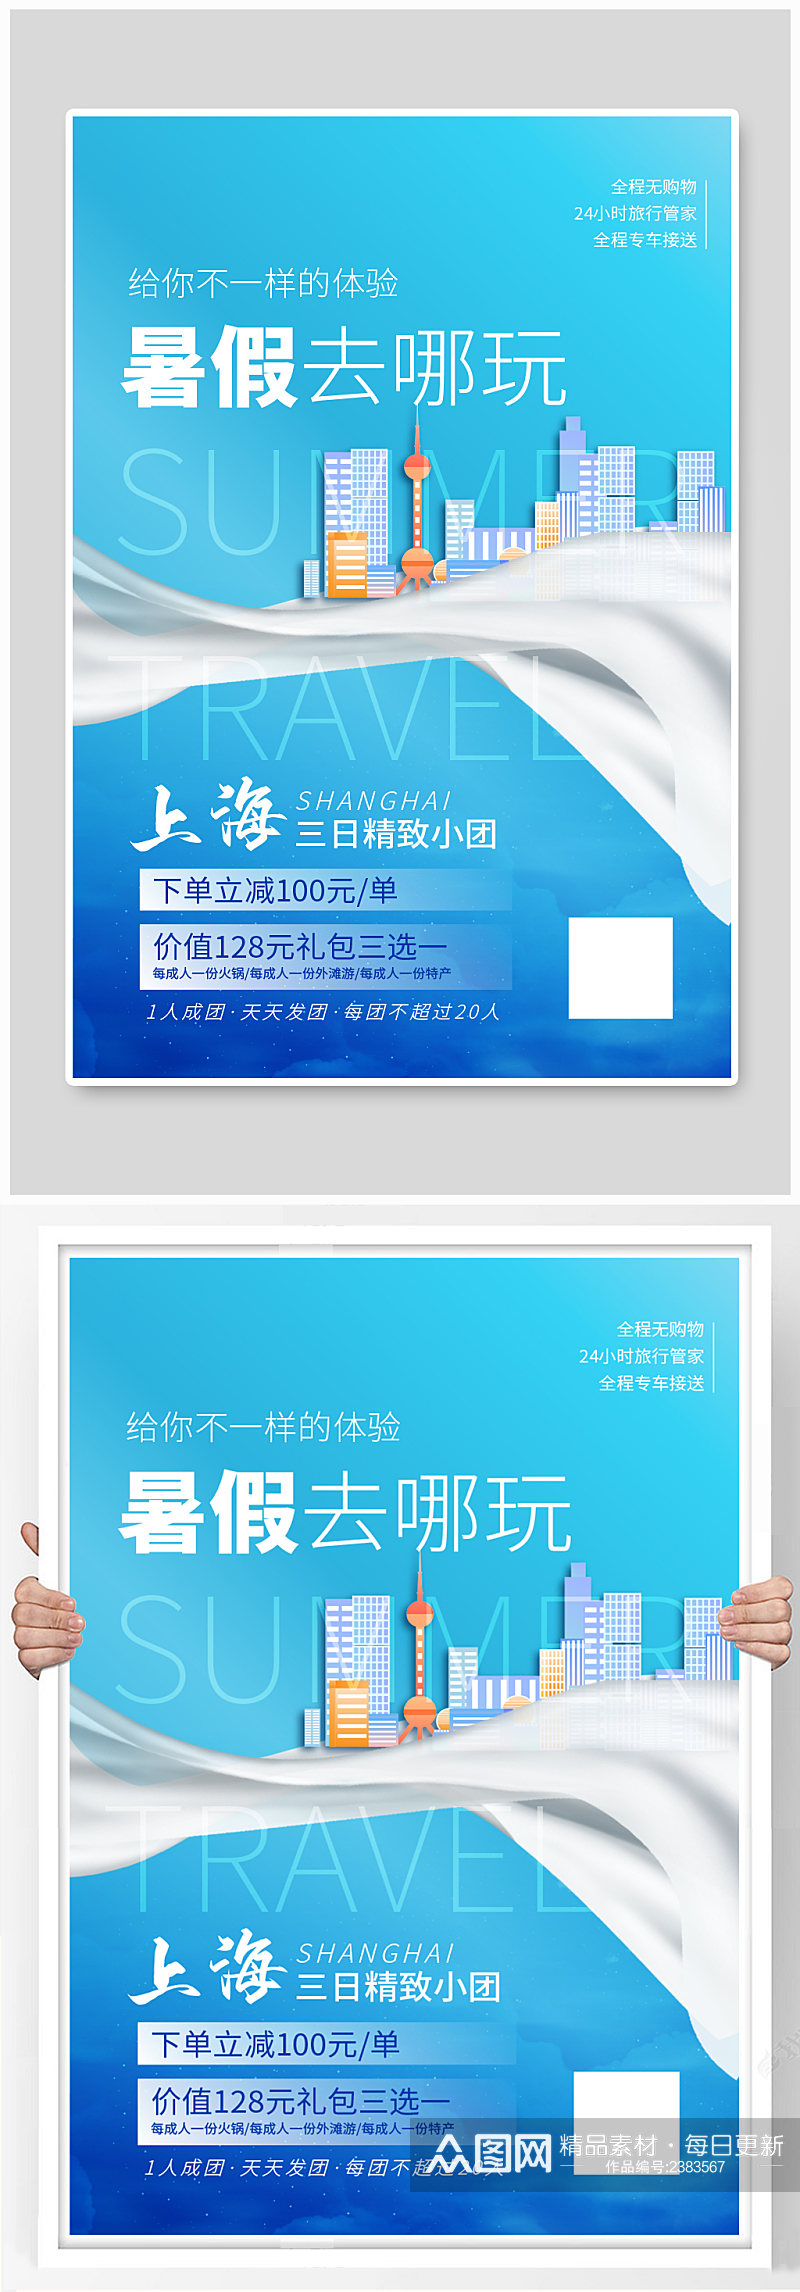 暑假旅游上海地标建筑蓝色大气海报素材